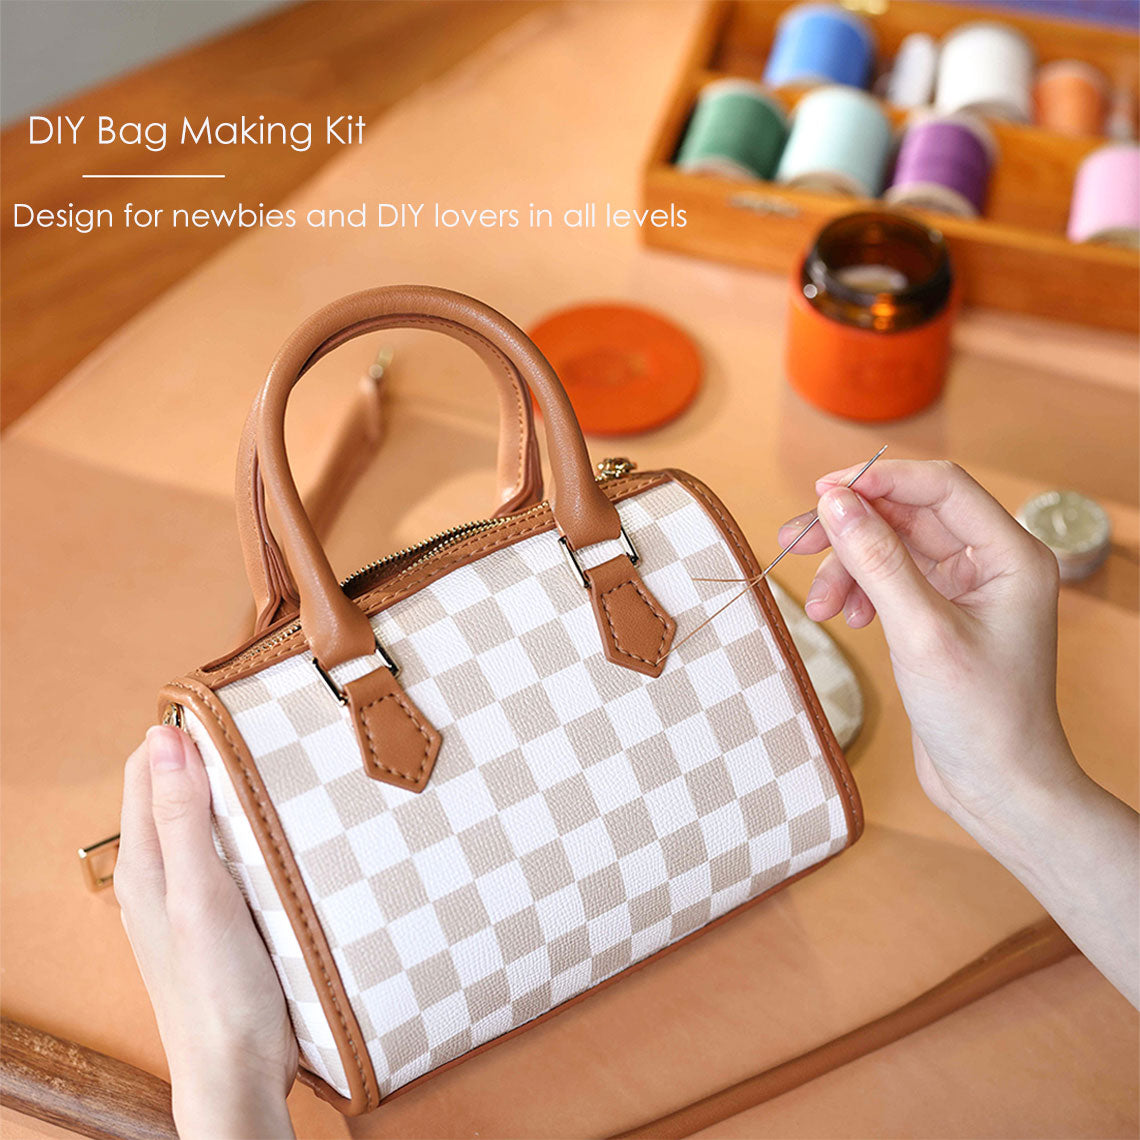 Easy DIY handbag kit for Beginner | Brown Leather Top handle Bag with Adjustable Strap | POPSEWING™